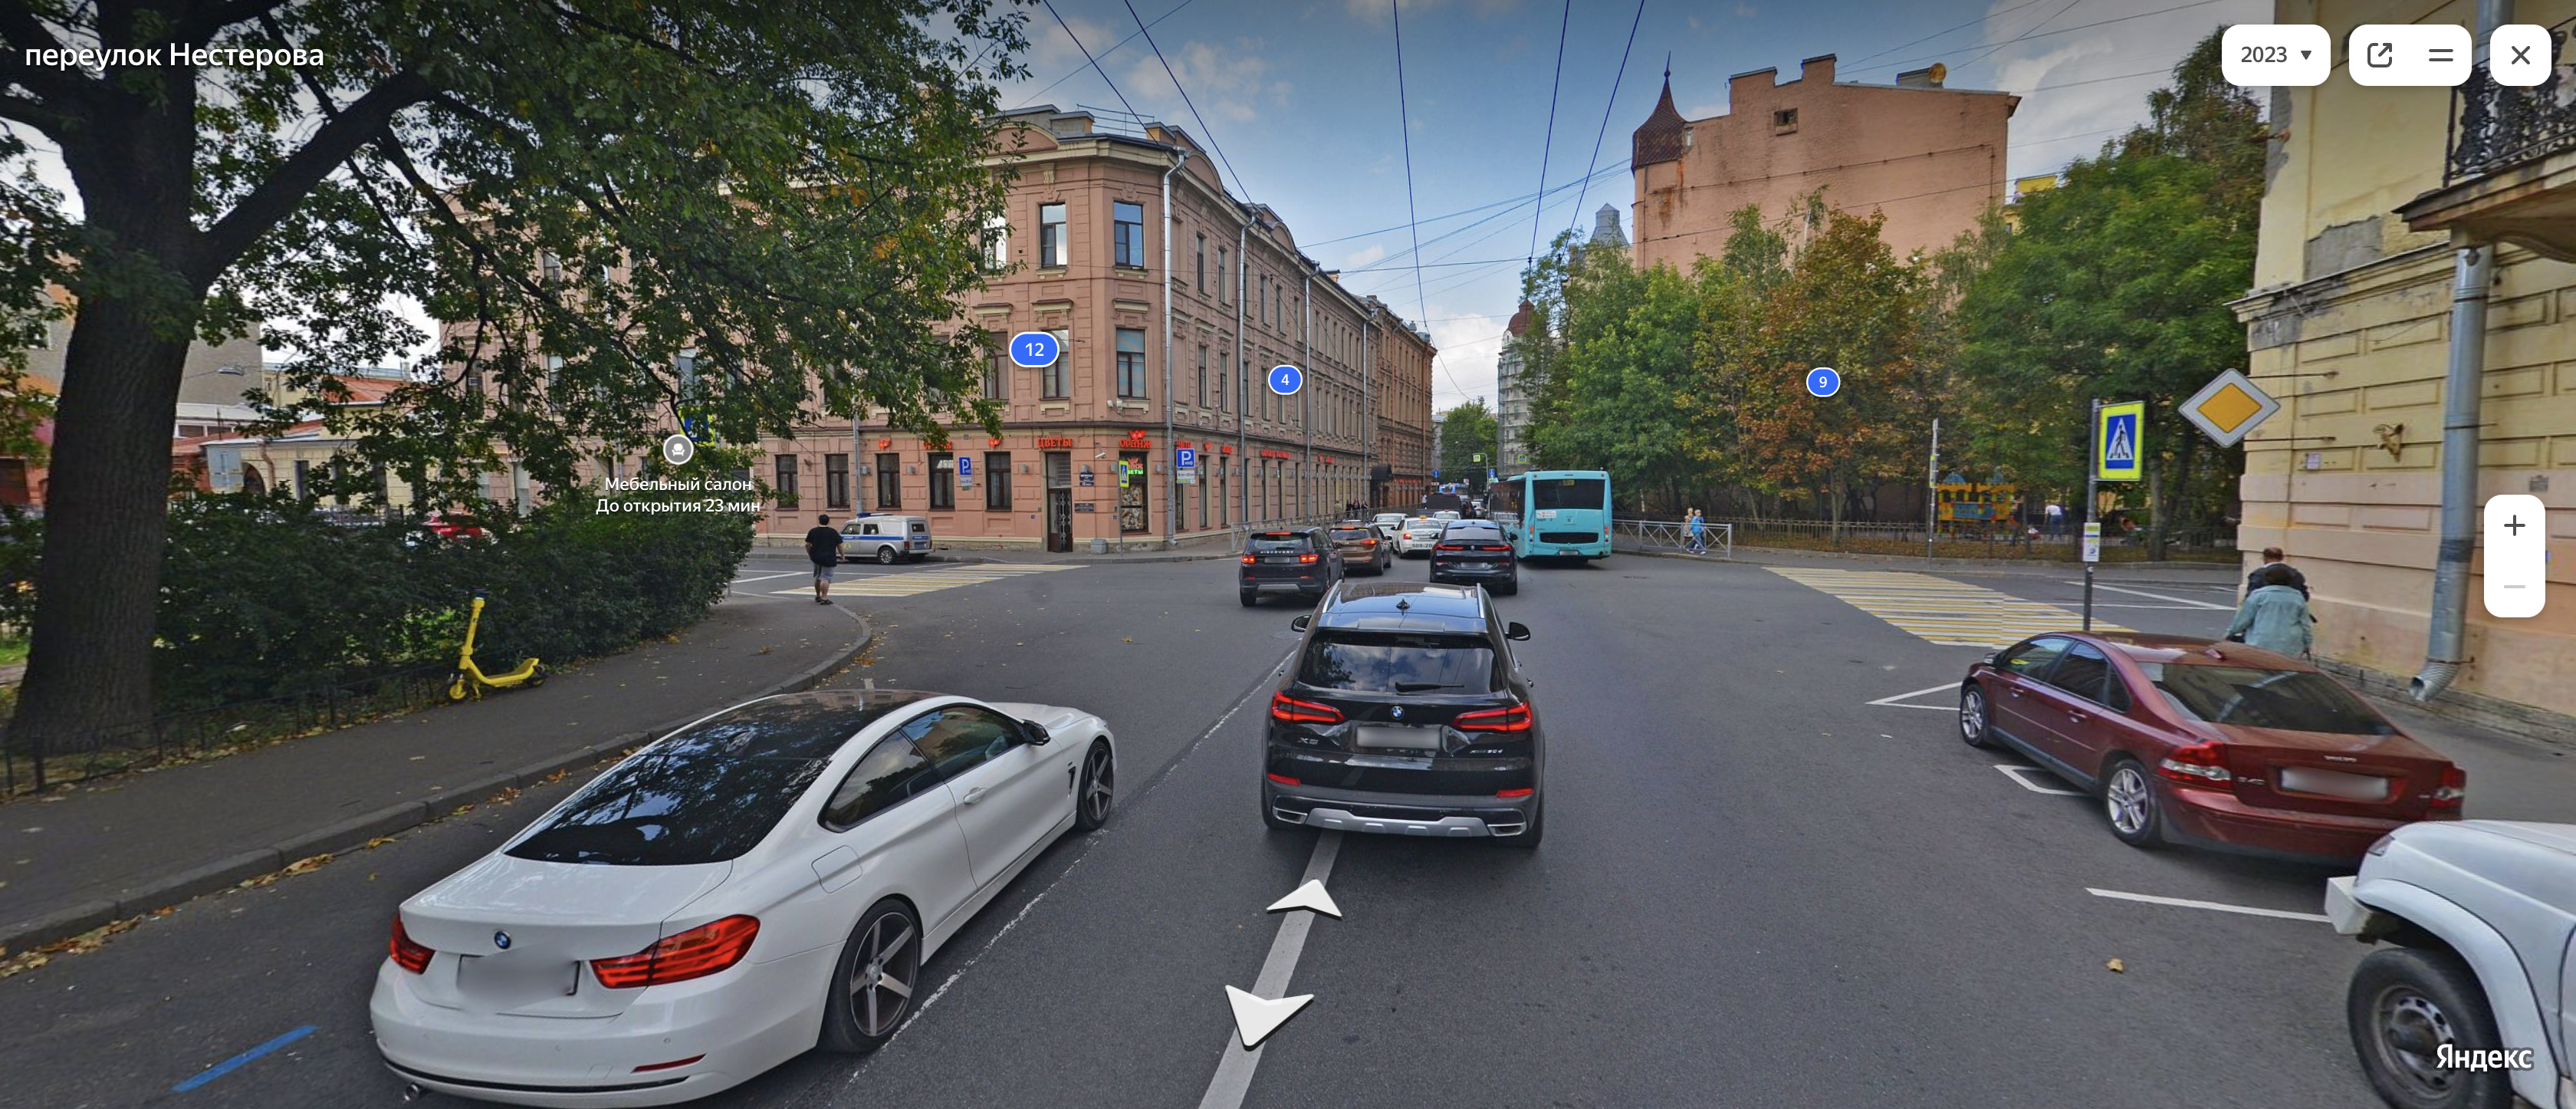 Вид на перекресток с переулка Нестерова. Запрещен только разворот, так как движение одностороннее